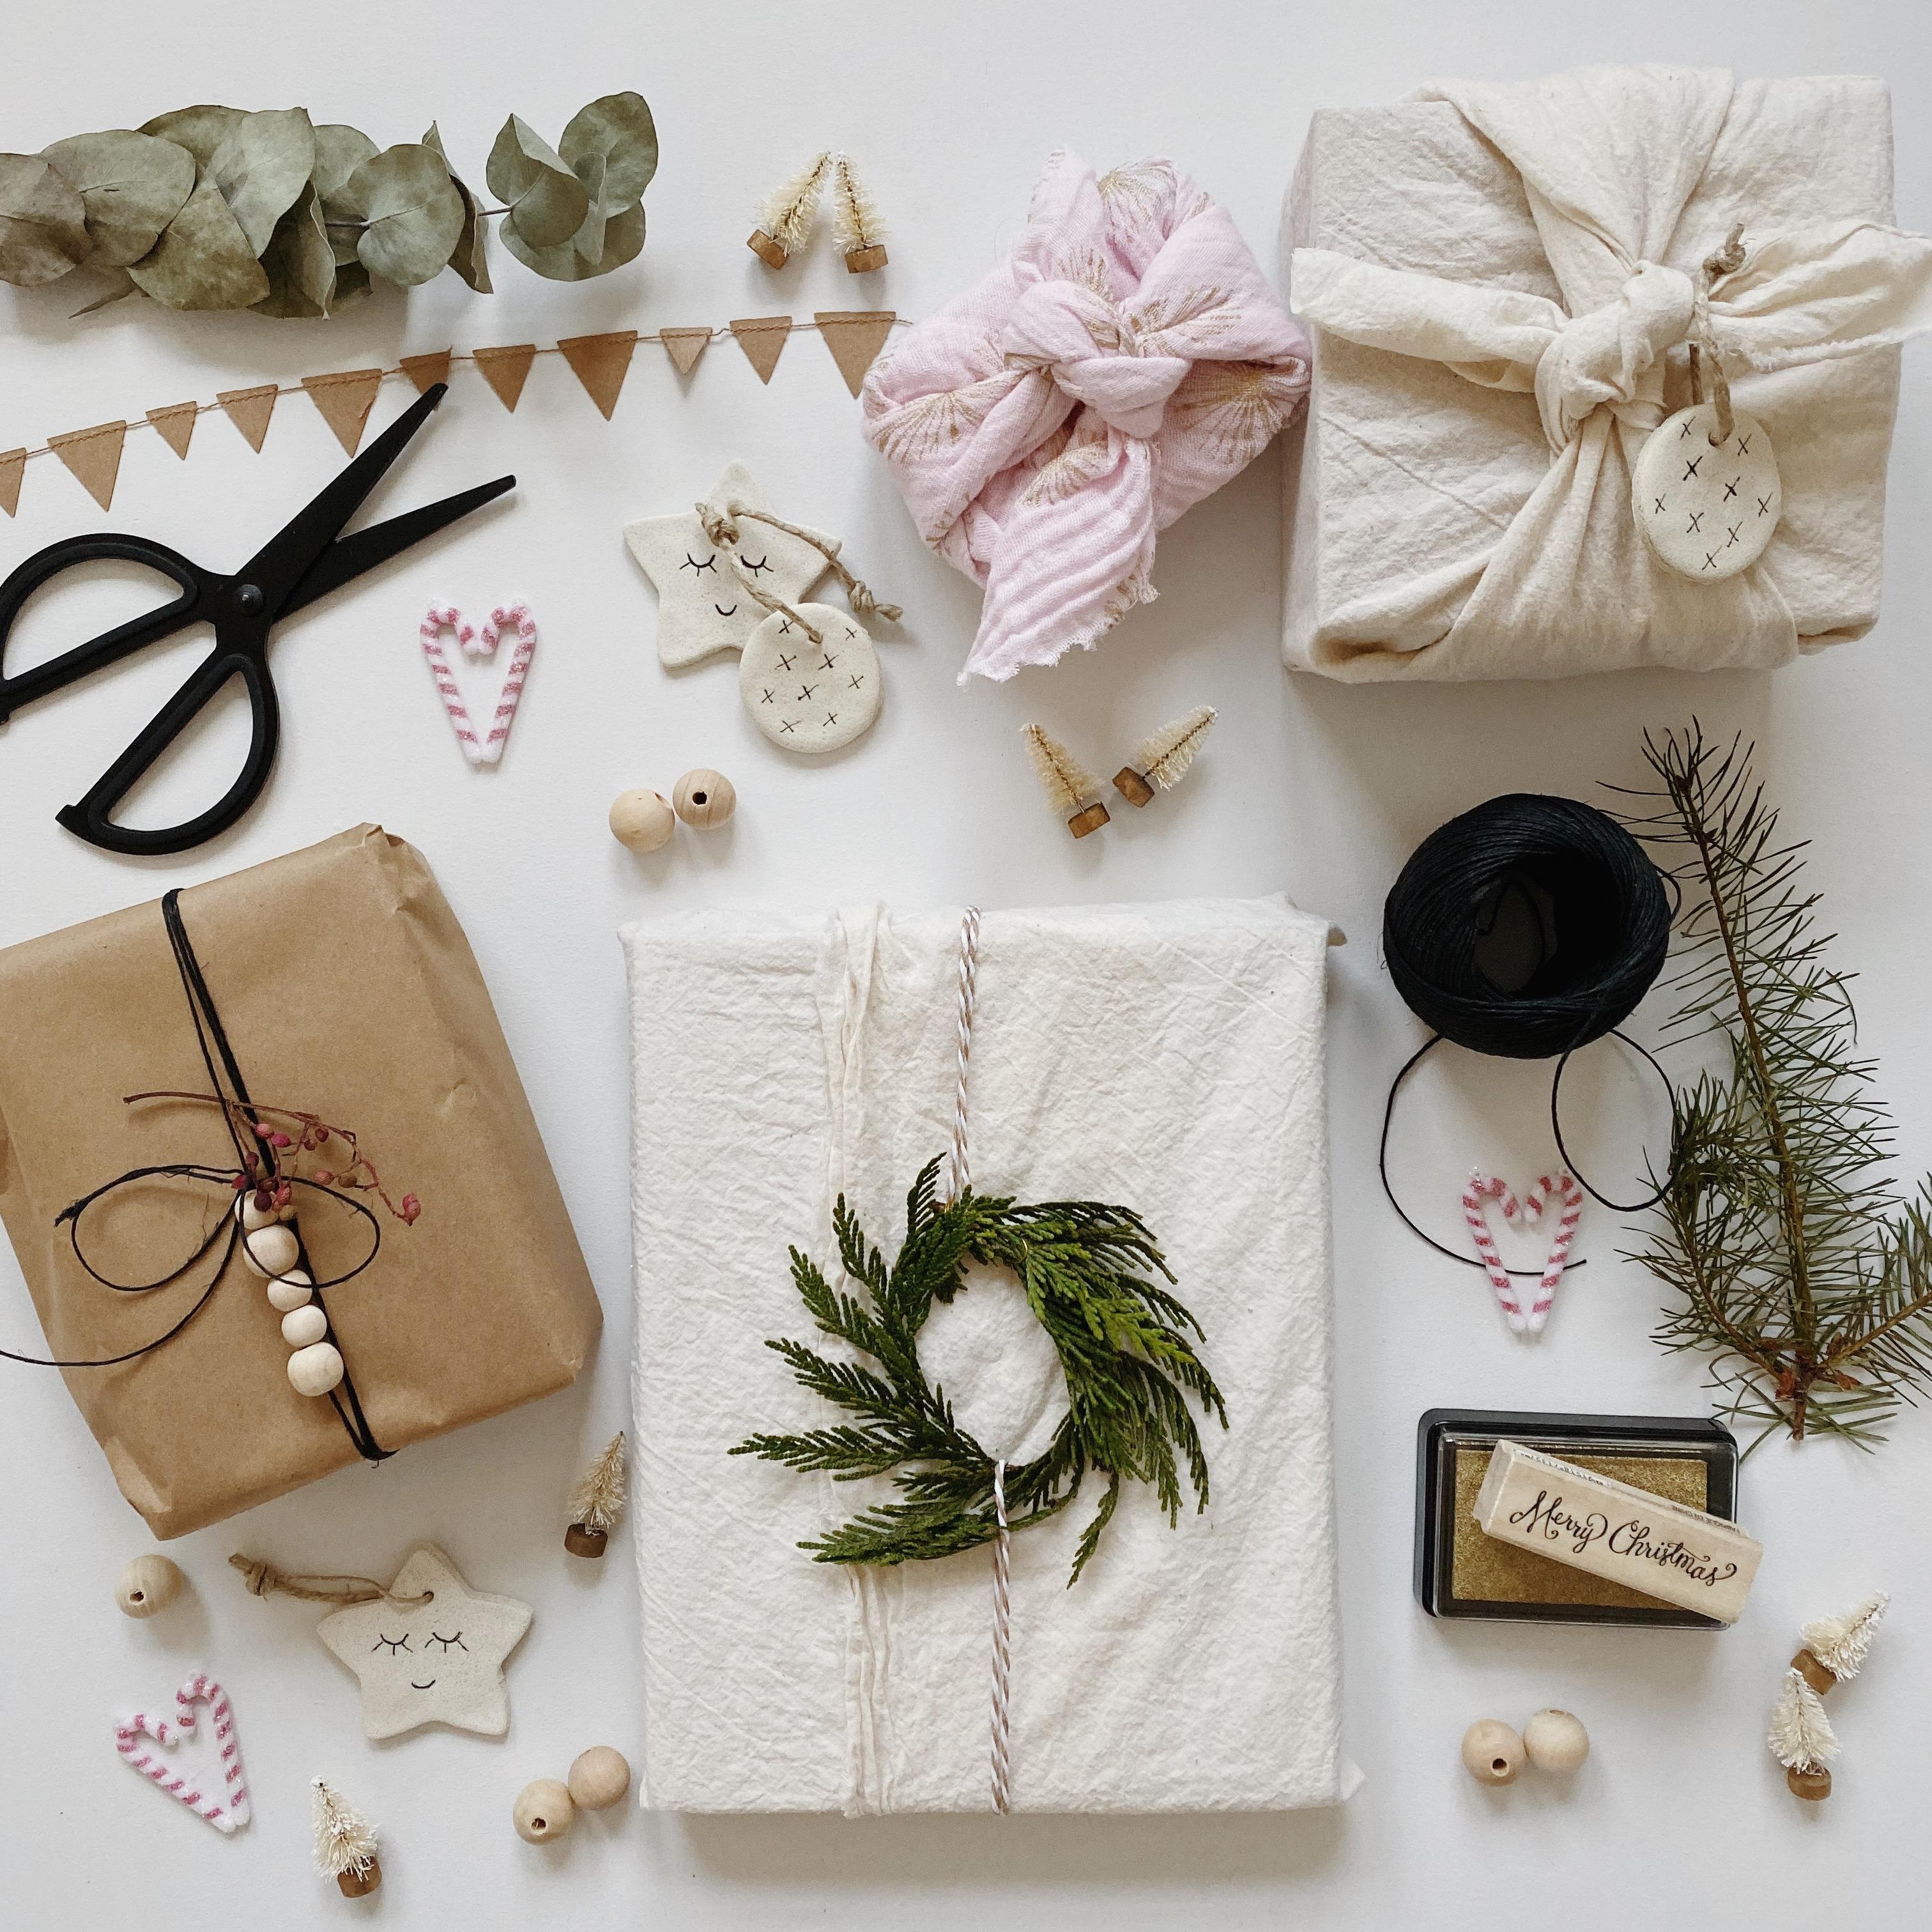 Die Geschenke sind fast alle verpackt❤️ #geschenkverpackung #giftwrapping #christmaspresents #nachhaltig